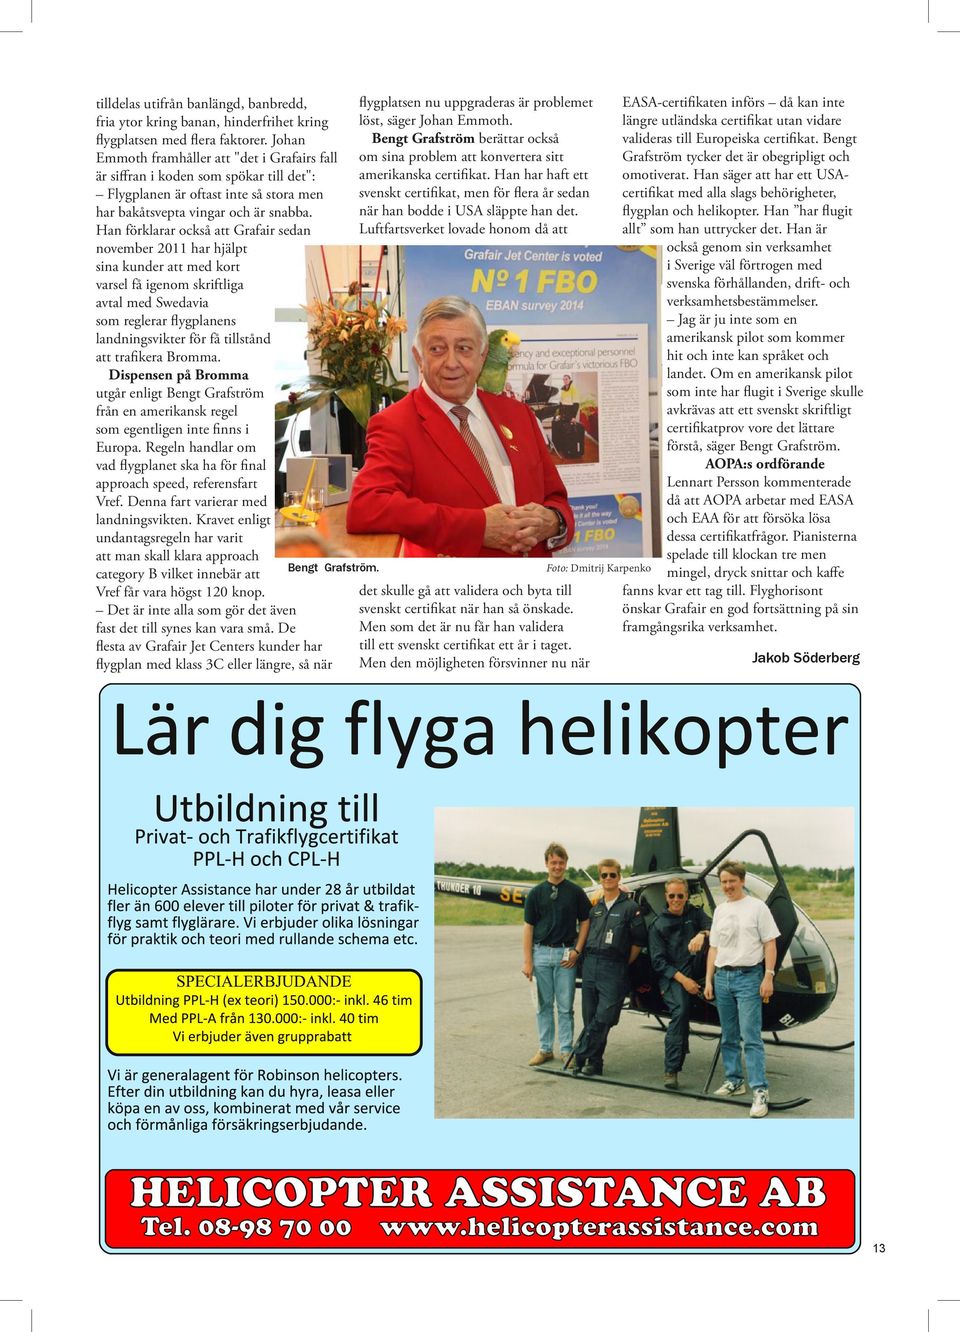 Han förklarar också att Grafair sedan november 2011 har hjälpt sina kunder att med kort varsel få igenom skriftliga avtal med Swedavia som reglerar flygplanens landningsvikter för få tillstånd att